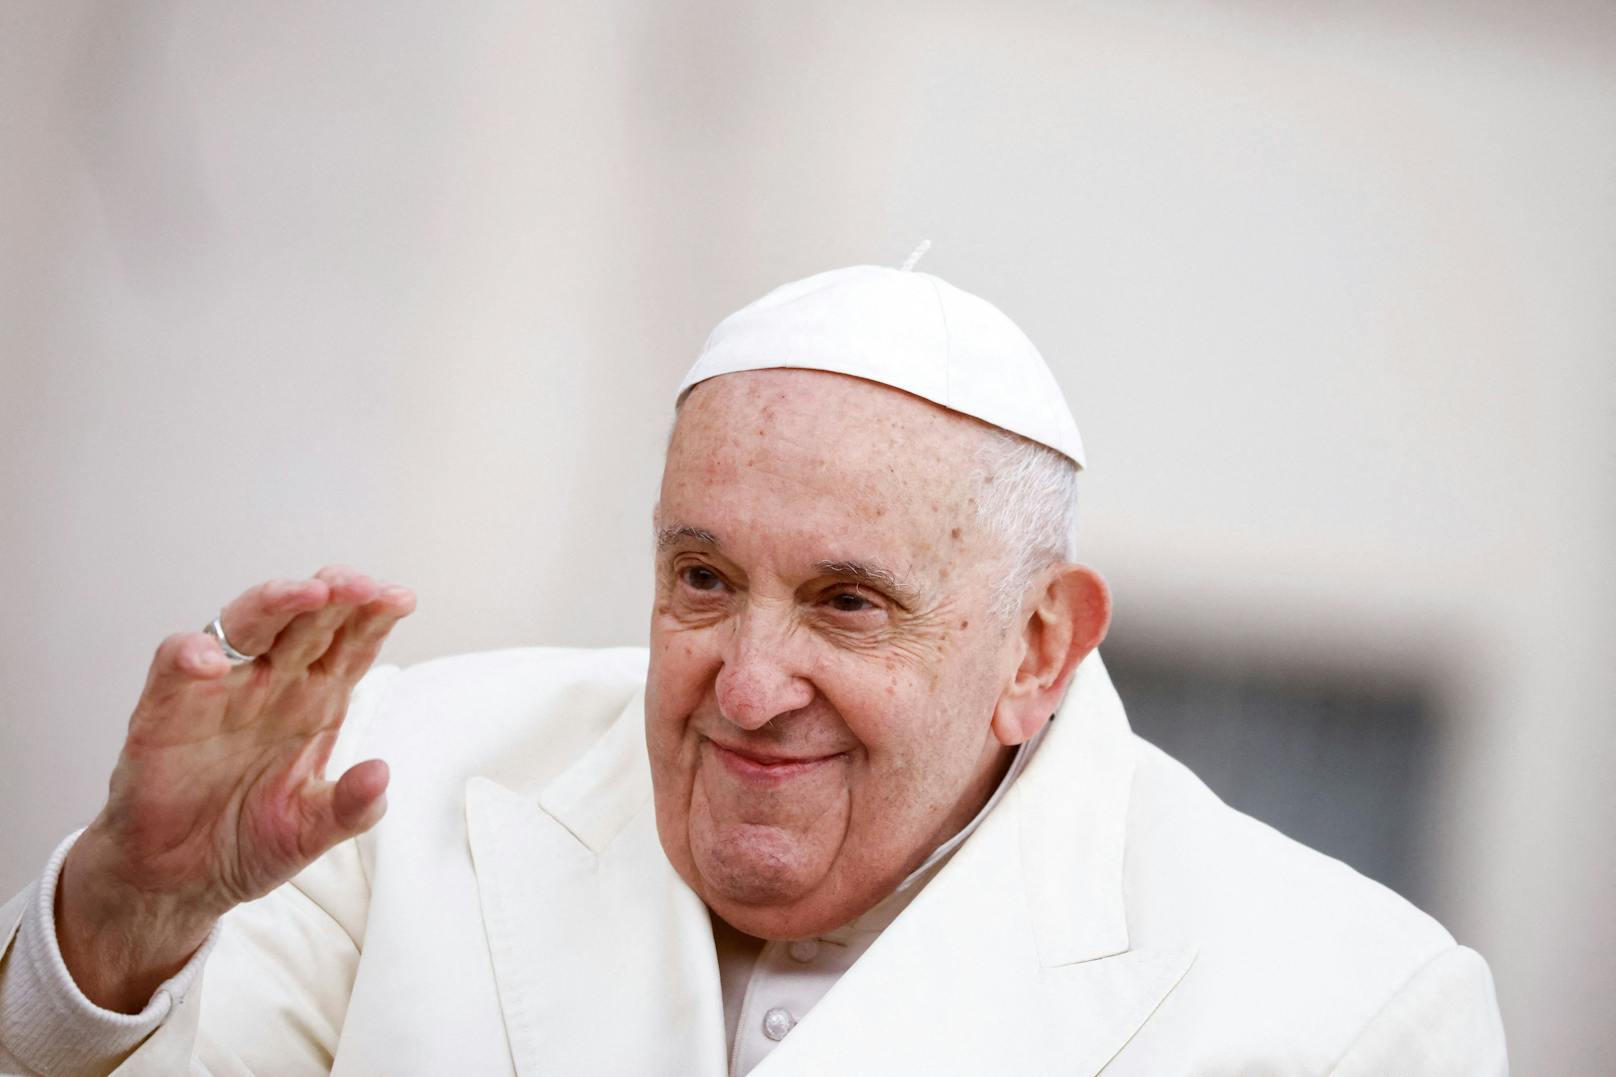 Papst: "Sex ist eine wunderschöne Sache"